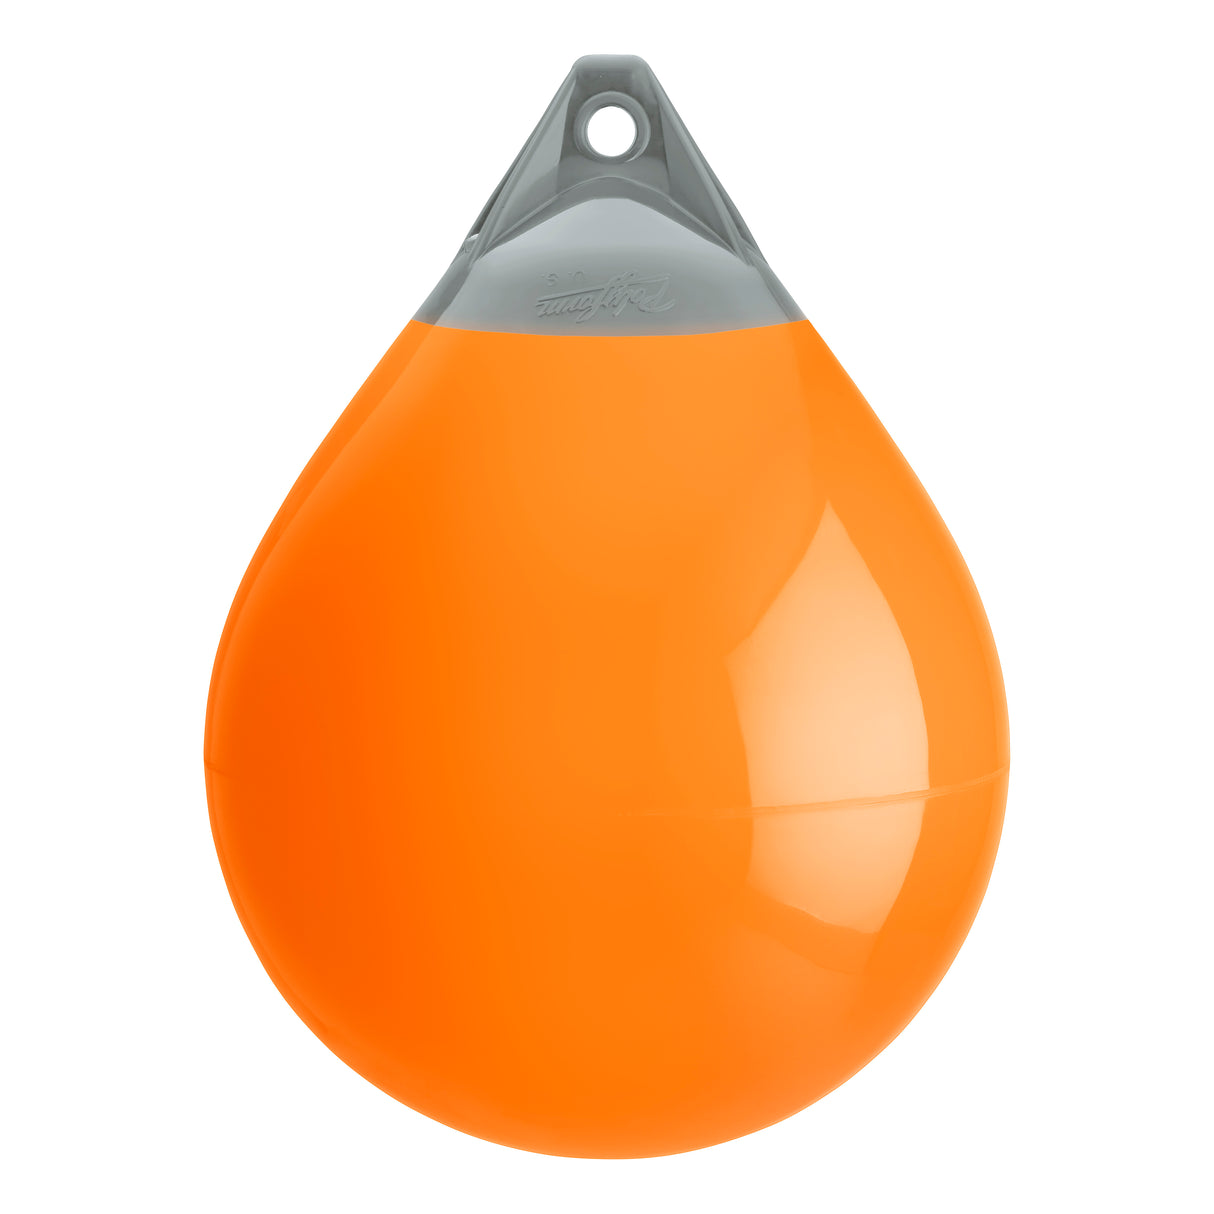 Orange buoy with Grey-Top, Polyform A-4